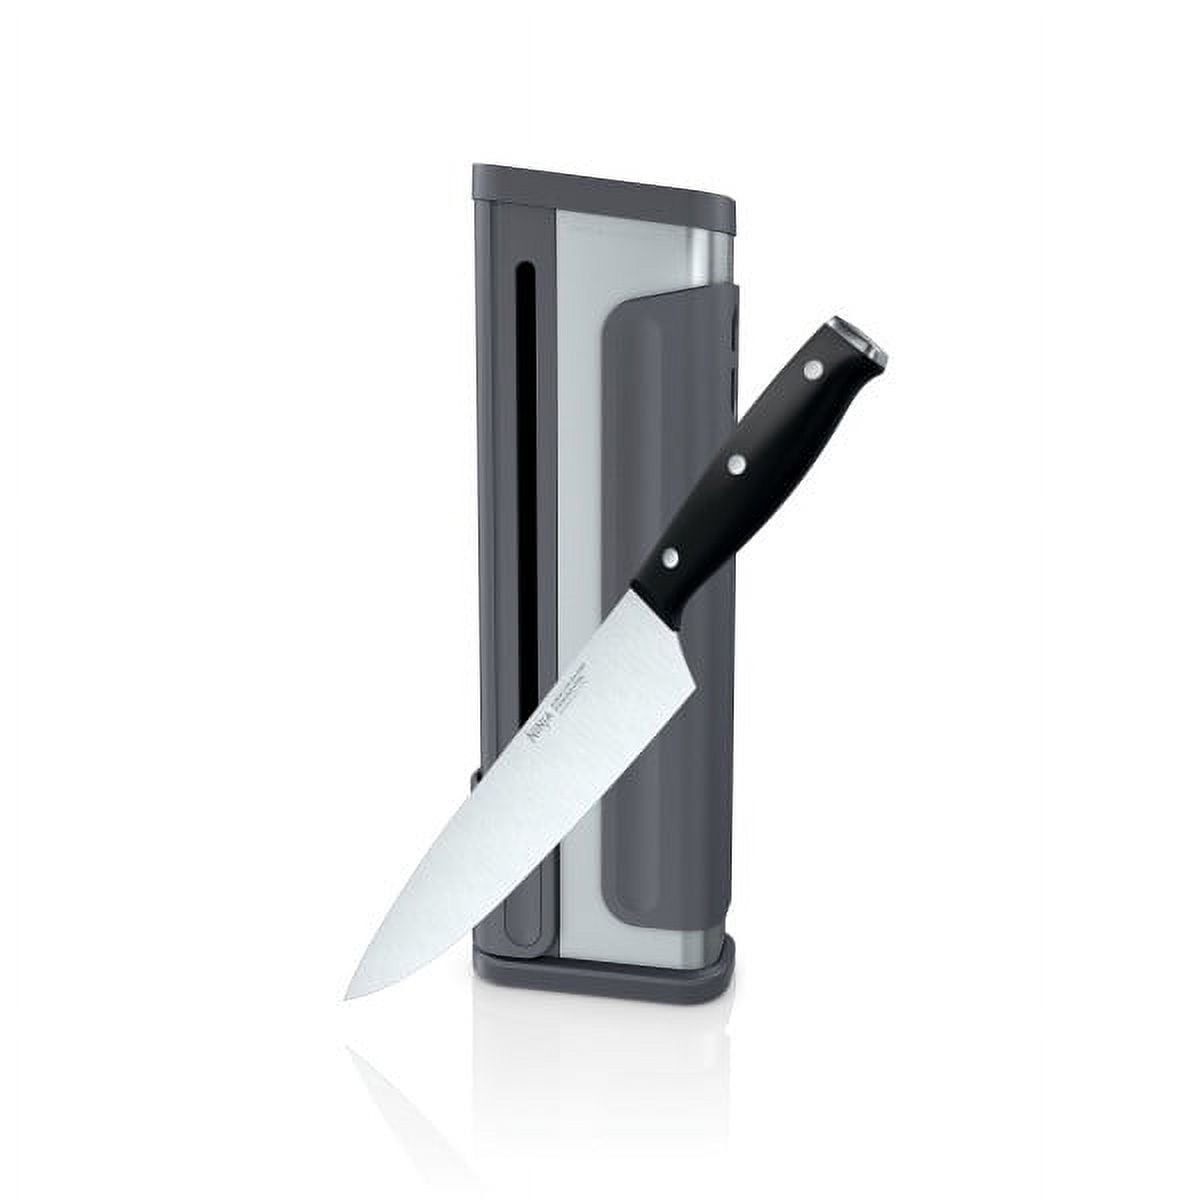 Ninja K32502 Foodi NeverDull System Chef Knife & Knife Sharpener Set, Premium, German Stainless Steel, Black